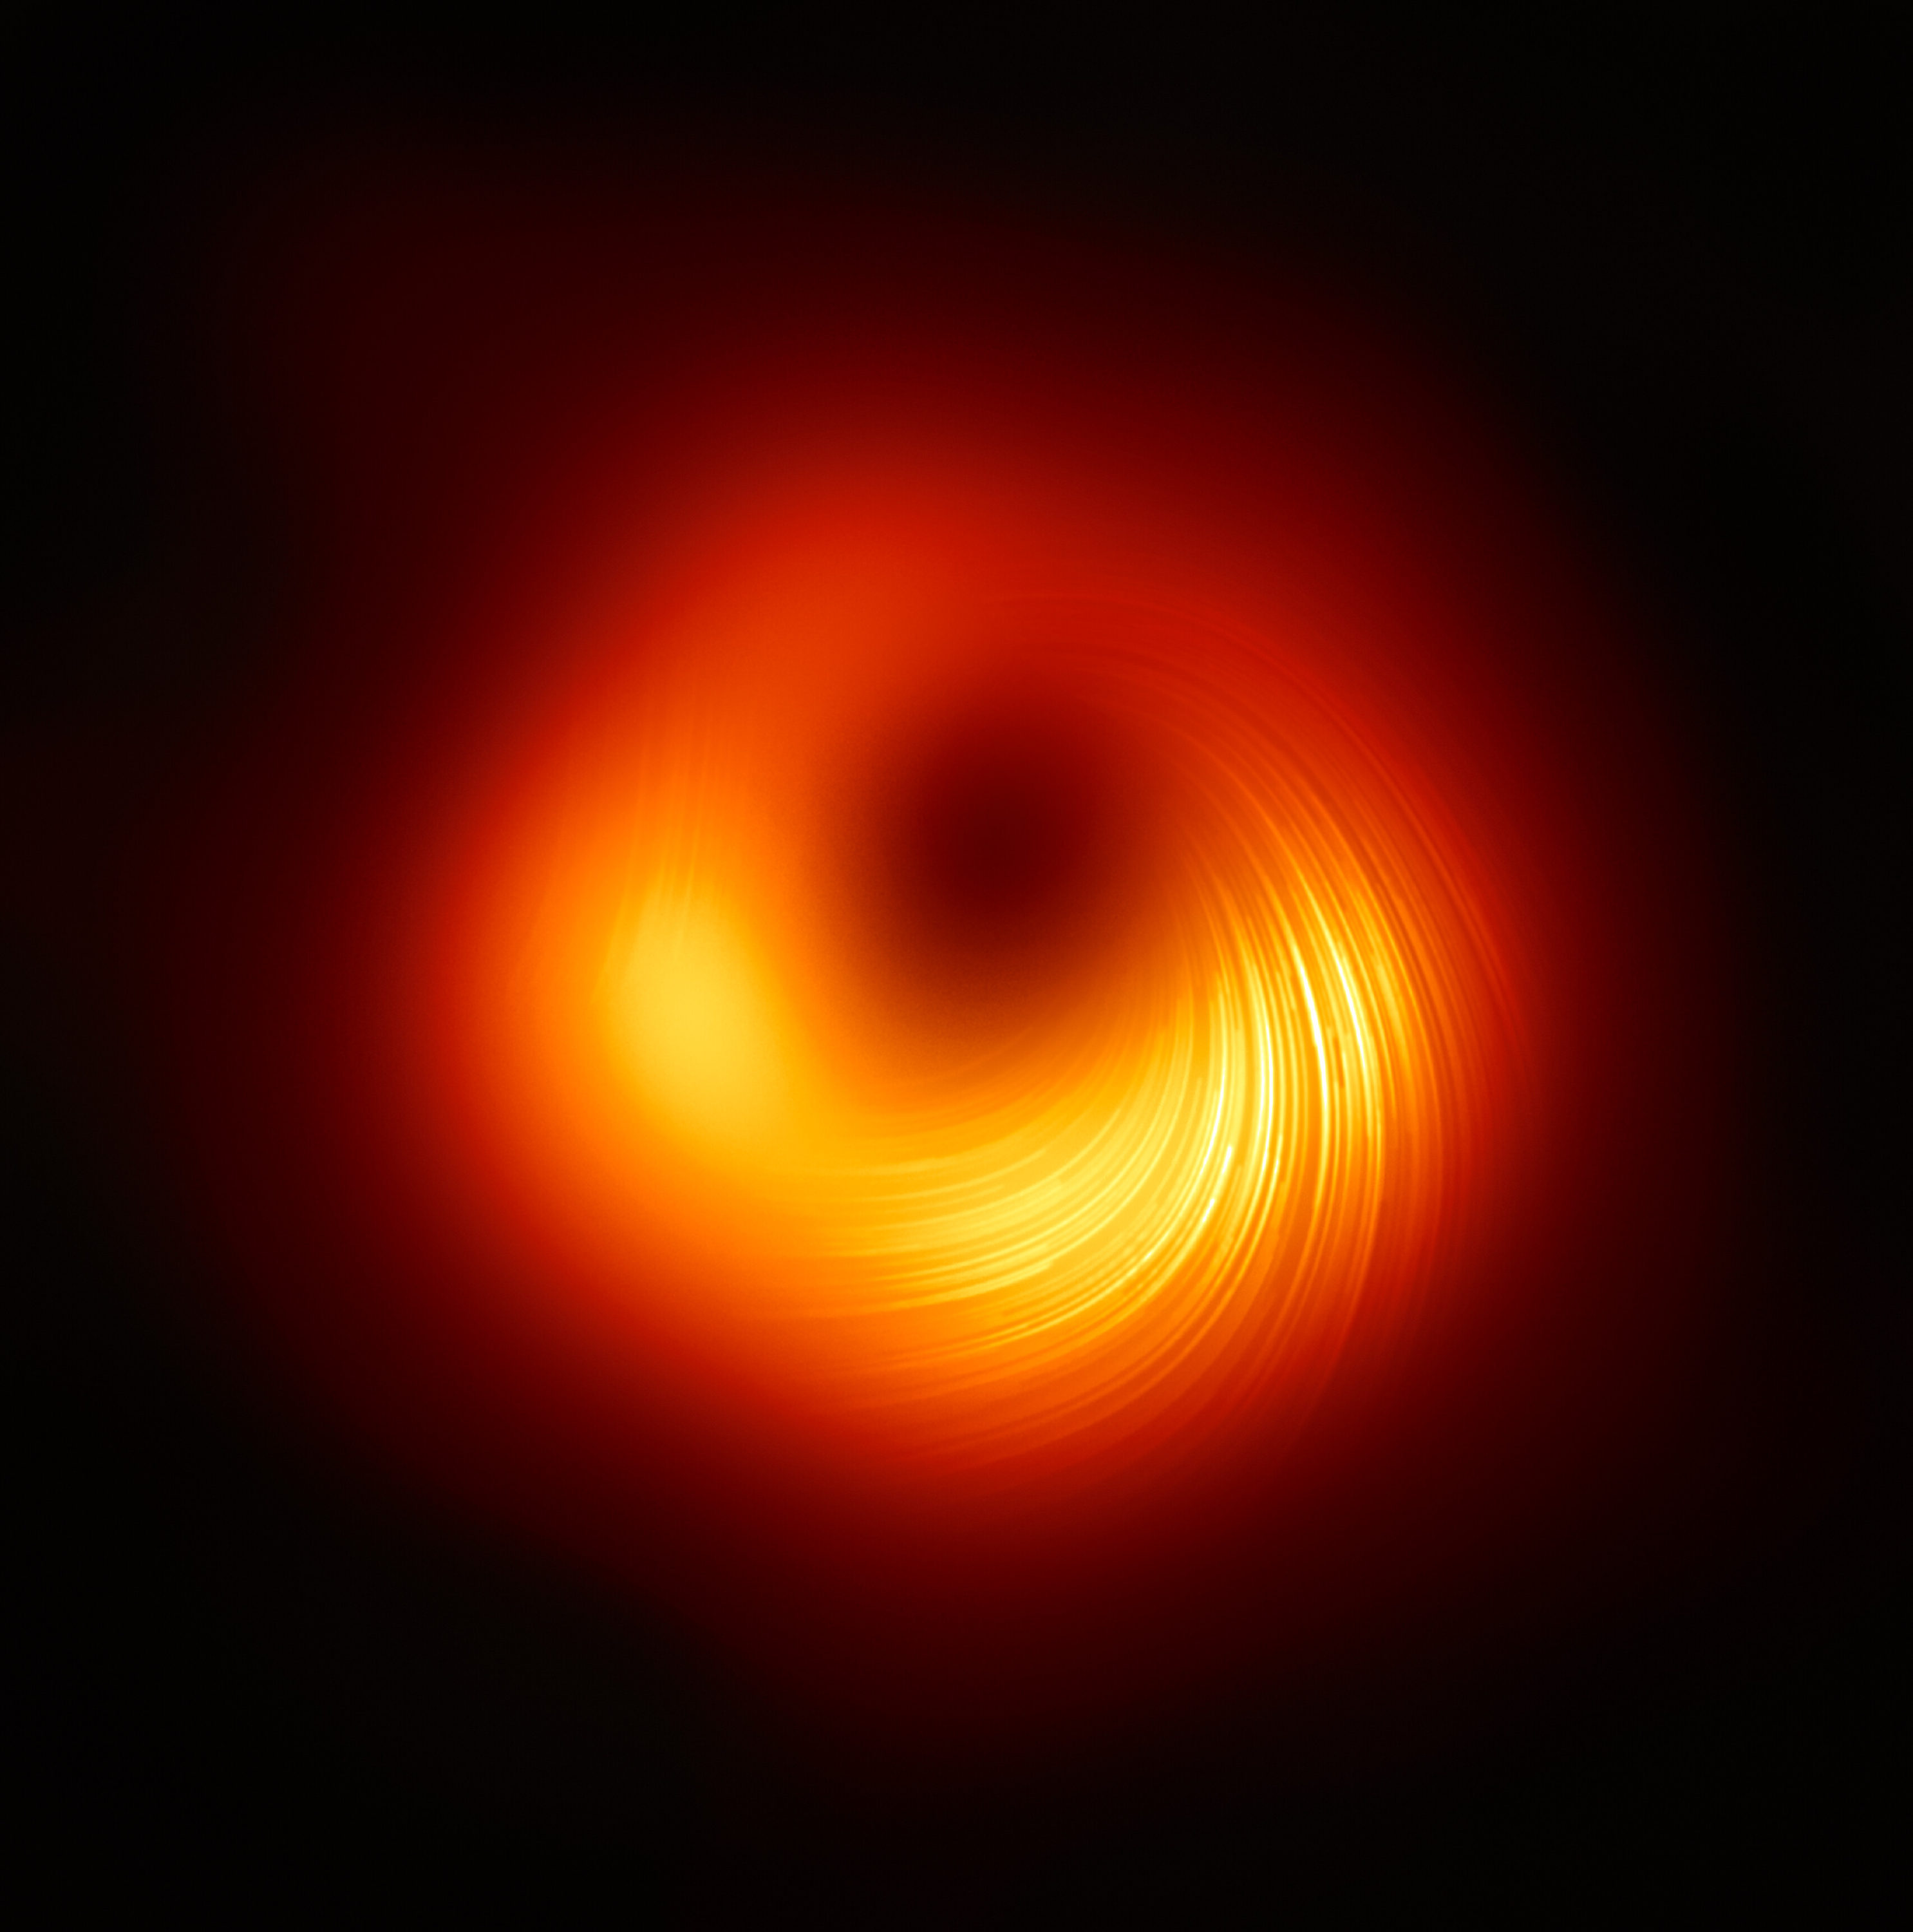 La colaboración EHT (Event Horizon Telescope o Telescopio del Horizonte de Sucesos), que produjo la primera imagen de un agujero negro hecha pública en 2019, ha revelado hoy cómo se ve con luz polarizada el enorme objeto que hay en el centro de la galaxia Messier 87 (M87). Es la primera vez que los astrónomos han podido medir la polarización (una huella que dejan los campos magnéticos) tan cerca del borde de un agujero negro. Esta imagen muestra la vista polarizada del agujero negro de M87. Las líneas marcan la orientación de la polarización, que está relacionada con el campo magnético que hay alrededor de la sombra del agujero negro. Crédito: EHT Collaboration